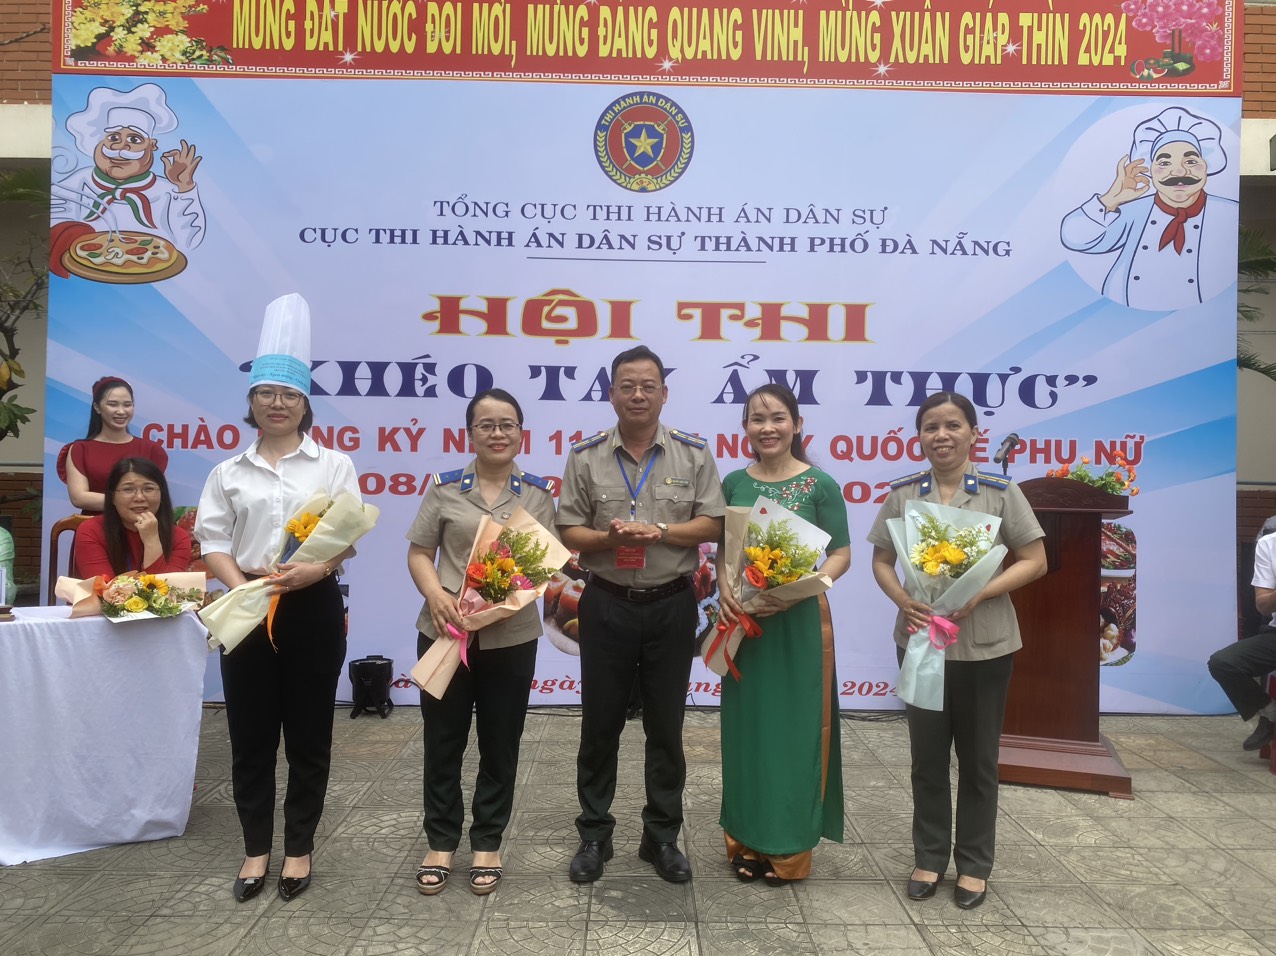 Cục Thi hành án dân sự TP Đà Nẵng tổ chức Hội thi 